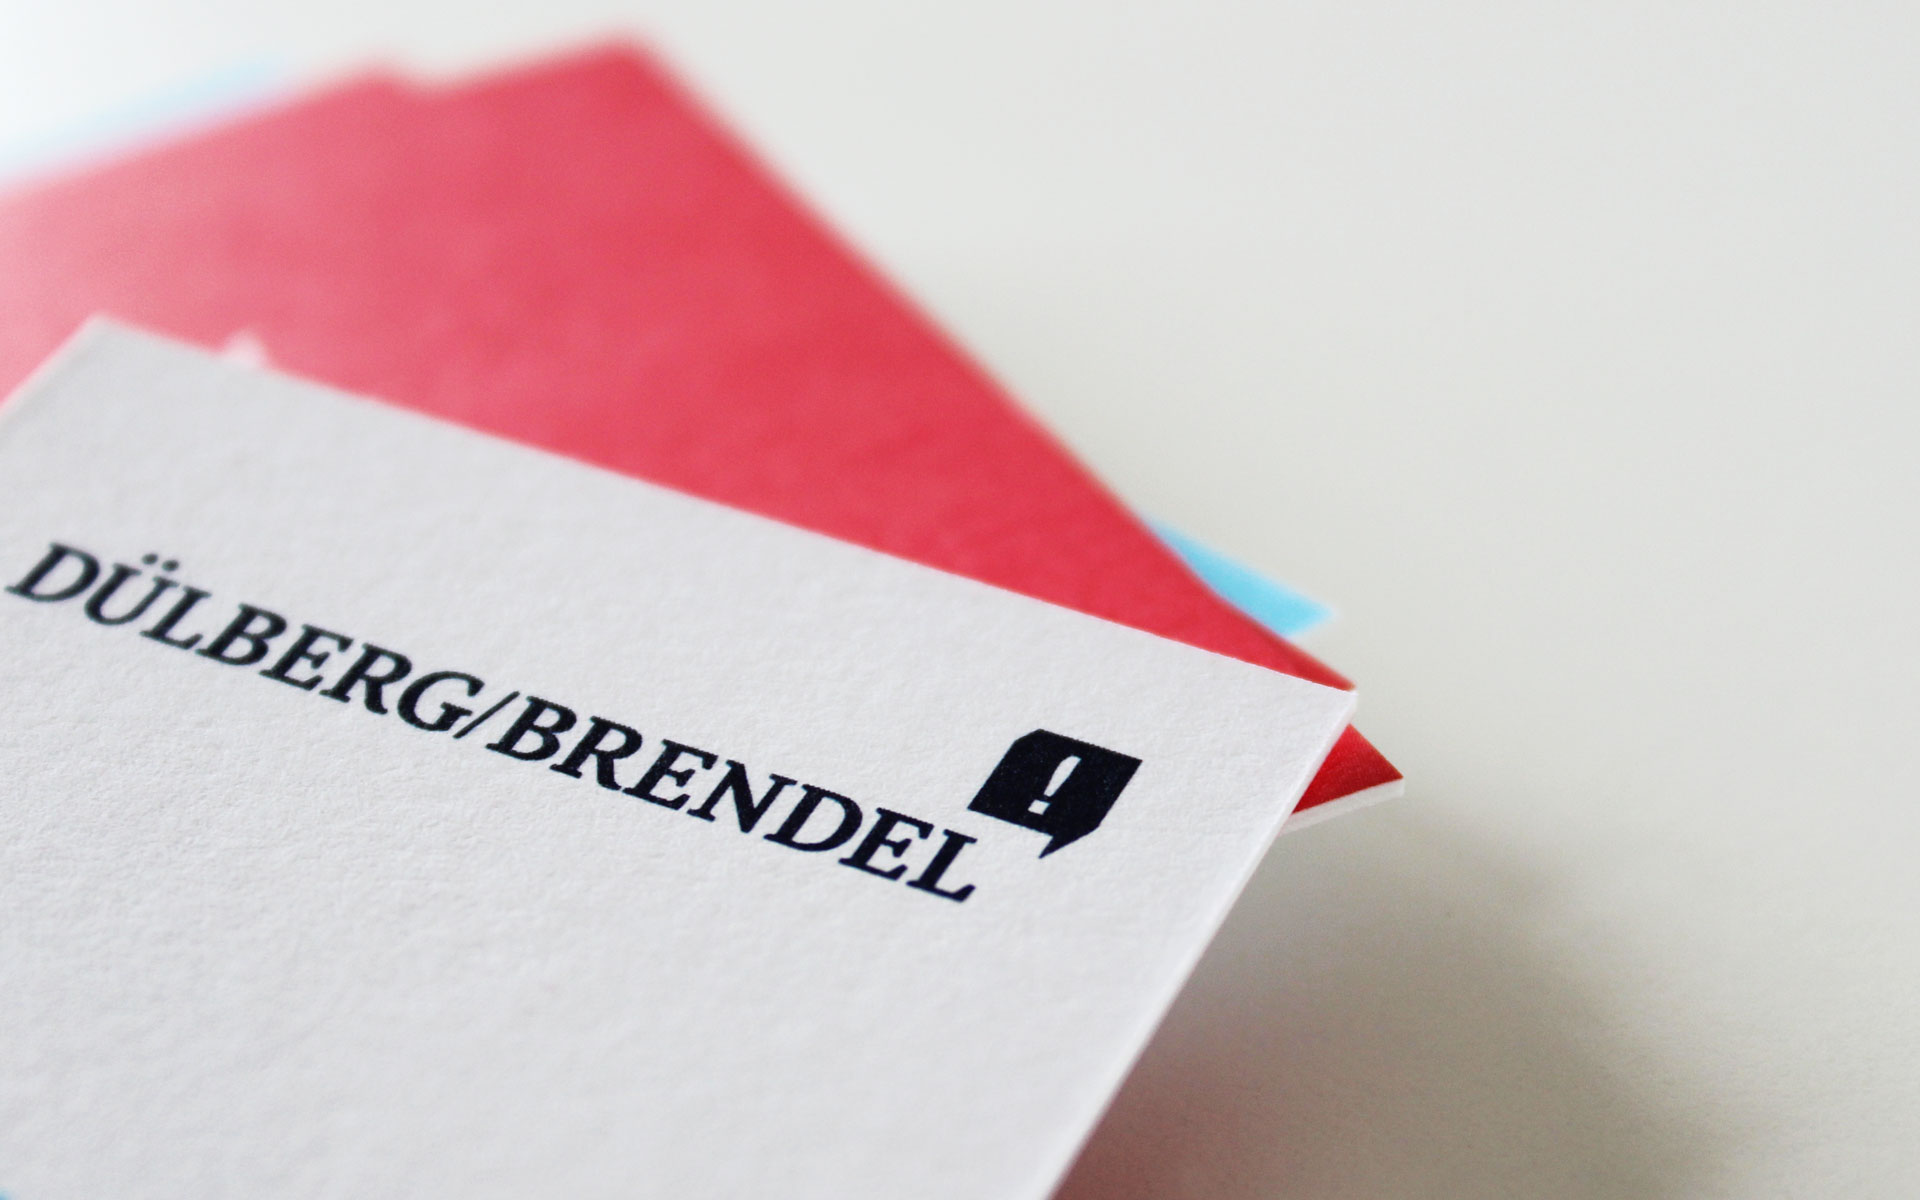 Dülberg & Brendel Corporate Design, Visitenkarte, Detail Logotype